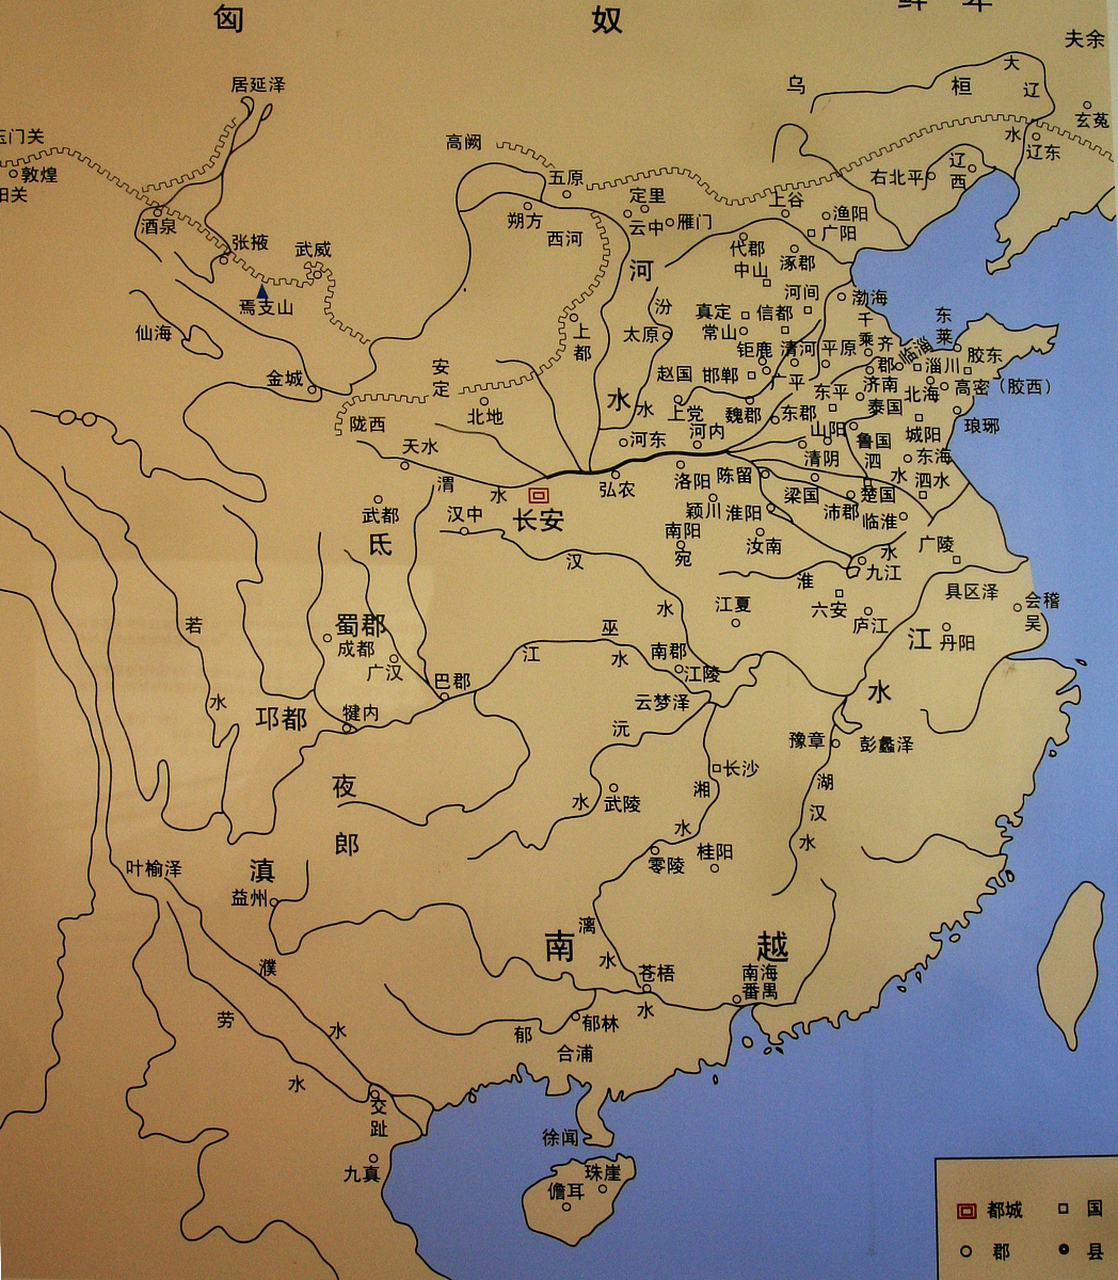 汉武帝是中国历史上影响最大的帝王之一,他在位期间